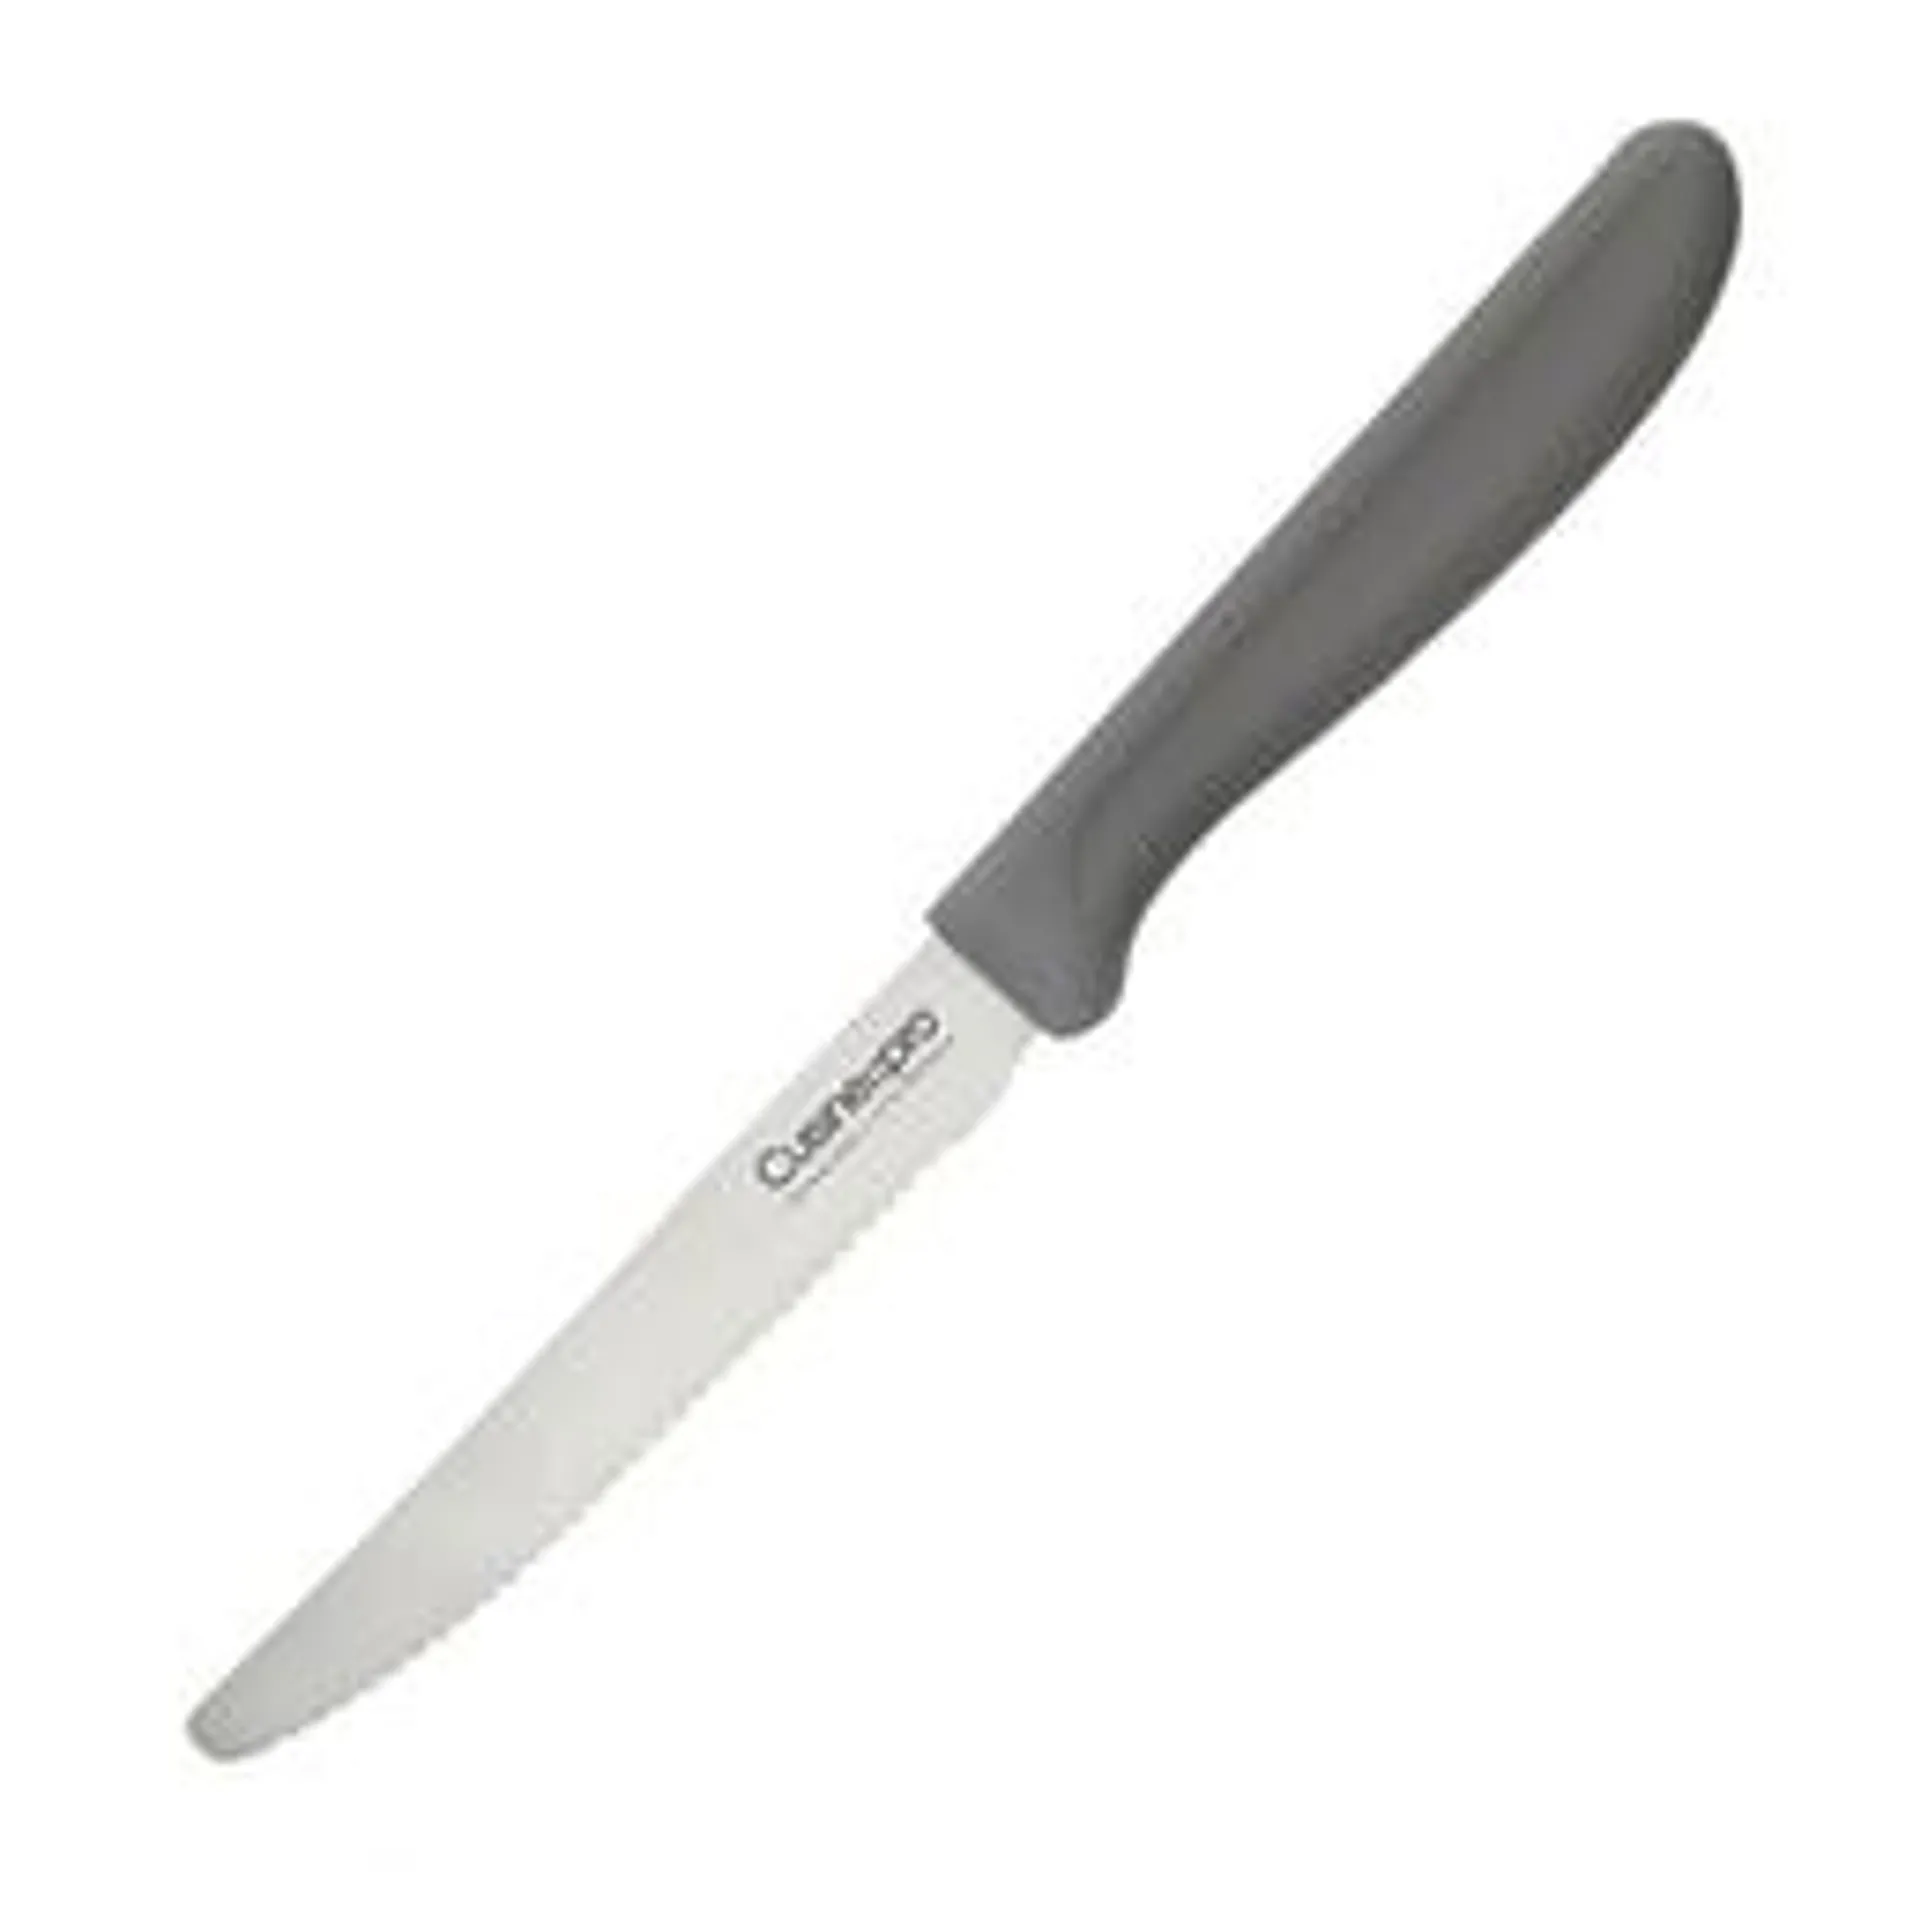 Cuisine::pro Classic Multi-Use Knife, Grey, 11cm